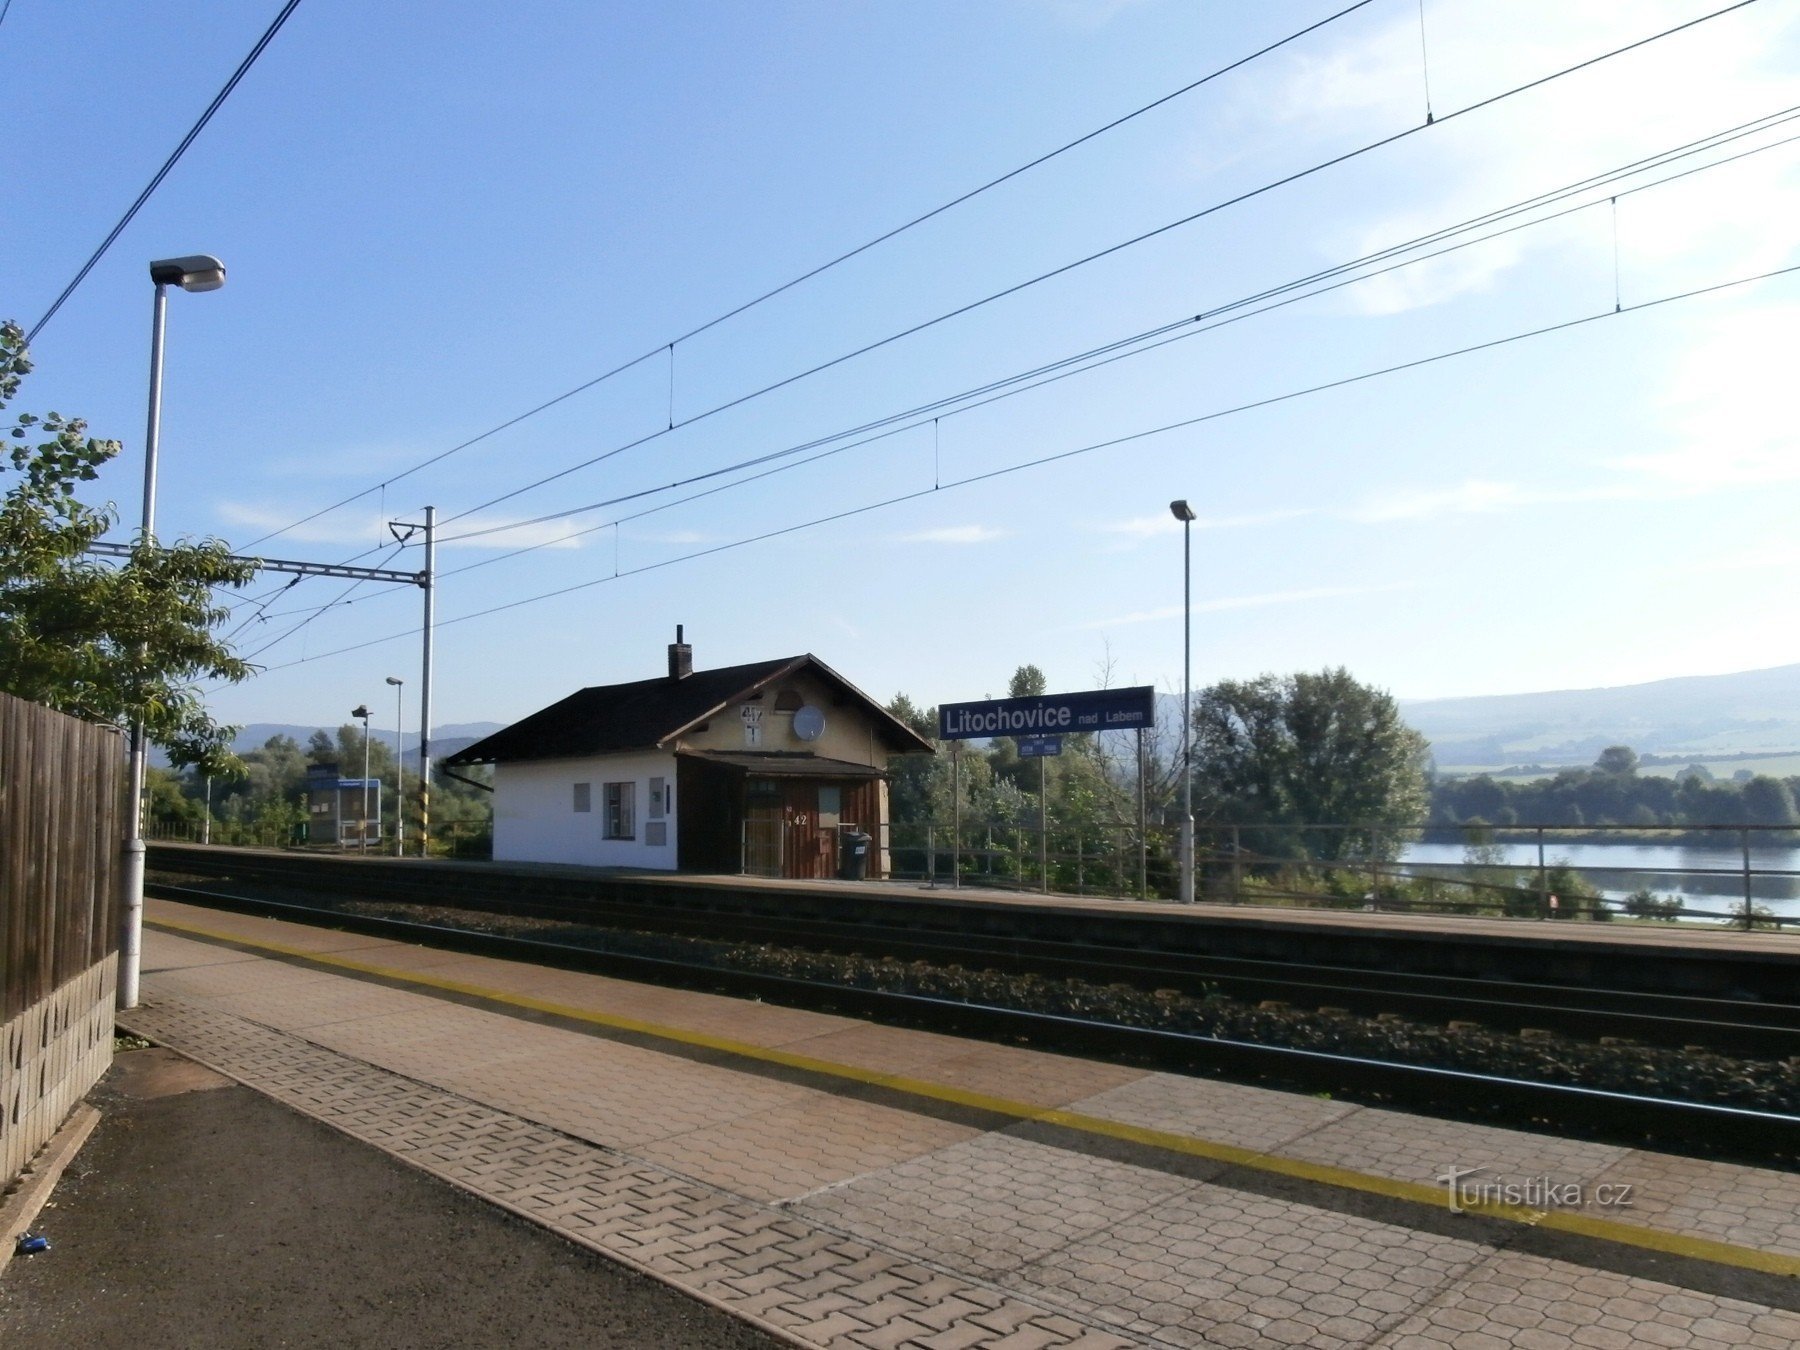 1. Arrêt de train Litochovice nad Labem